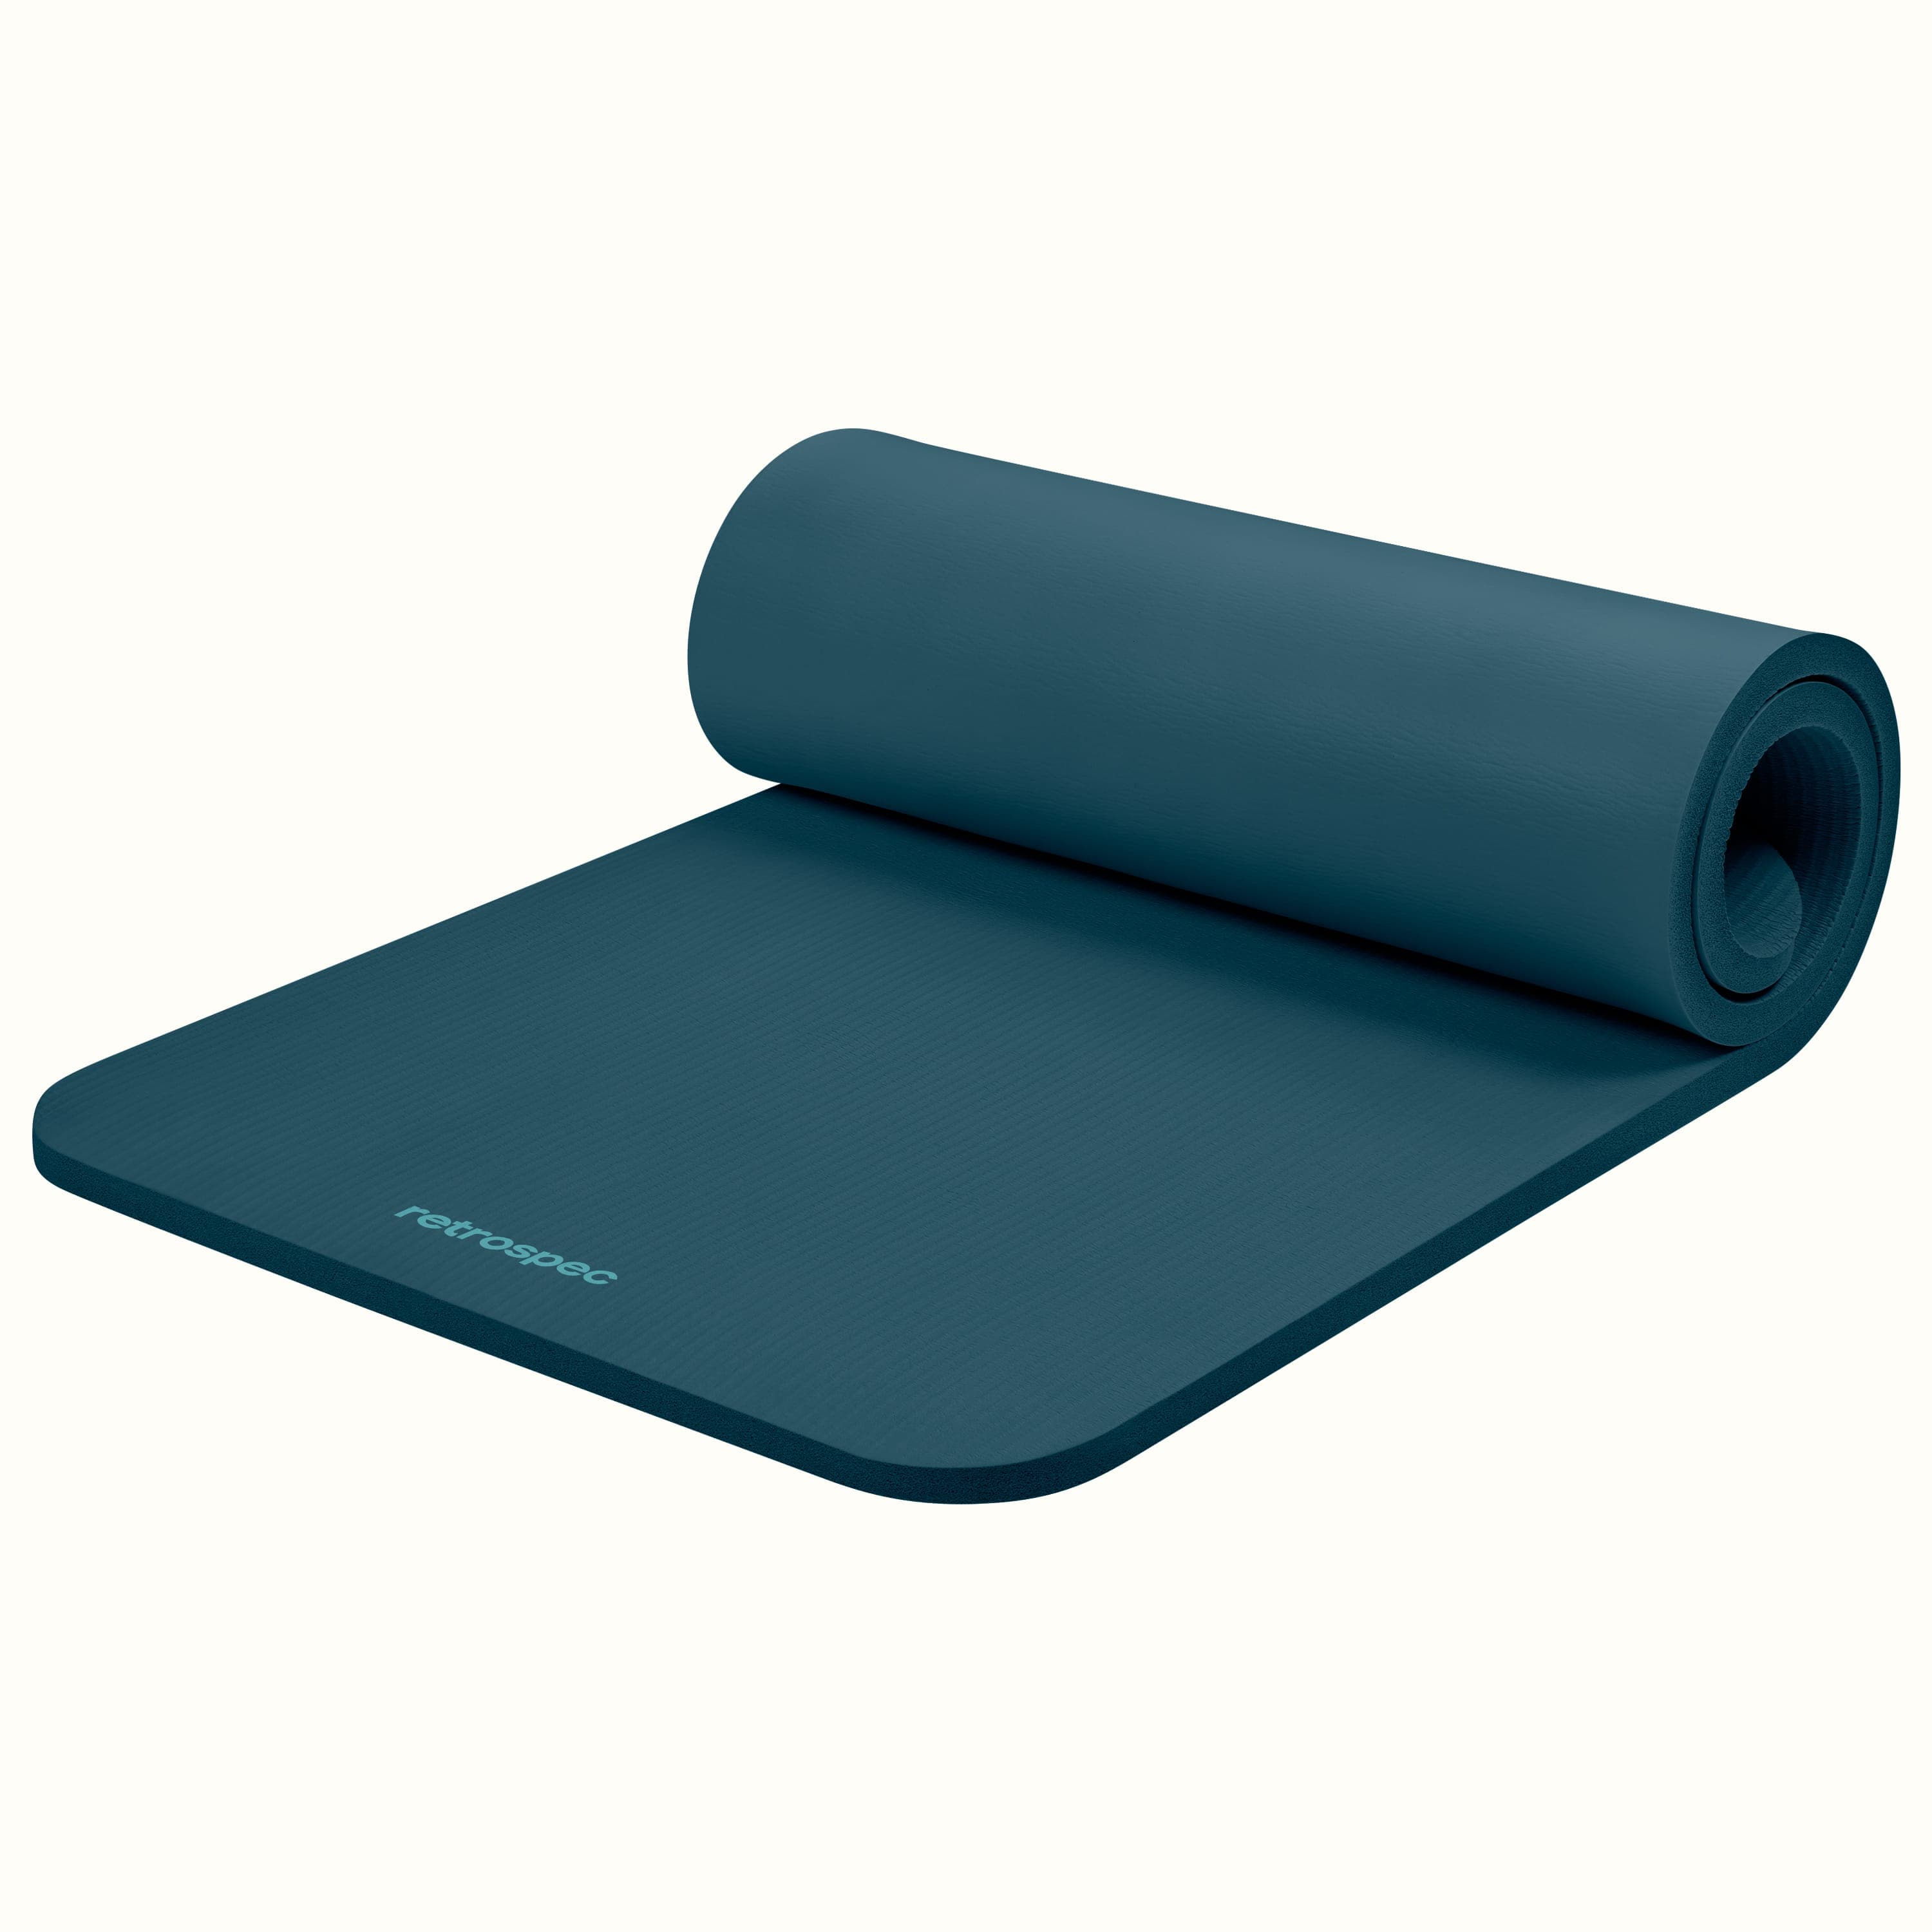 Basics 1/2-Inch Extra Thick Exercise Yoga Mat